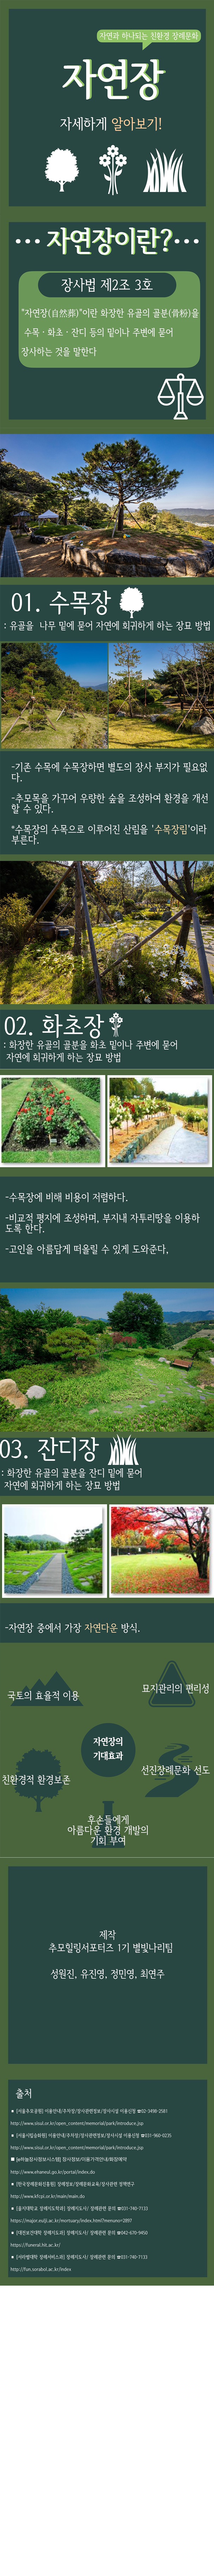 [카드뉴스] 자연장, 자세하게 알아보기 사진